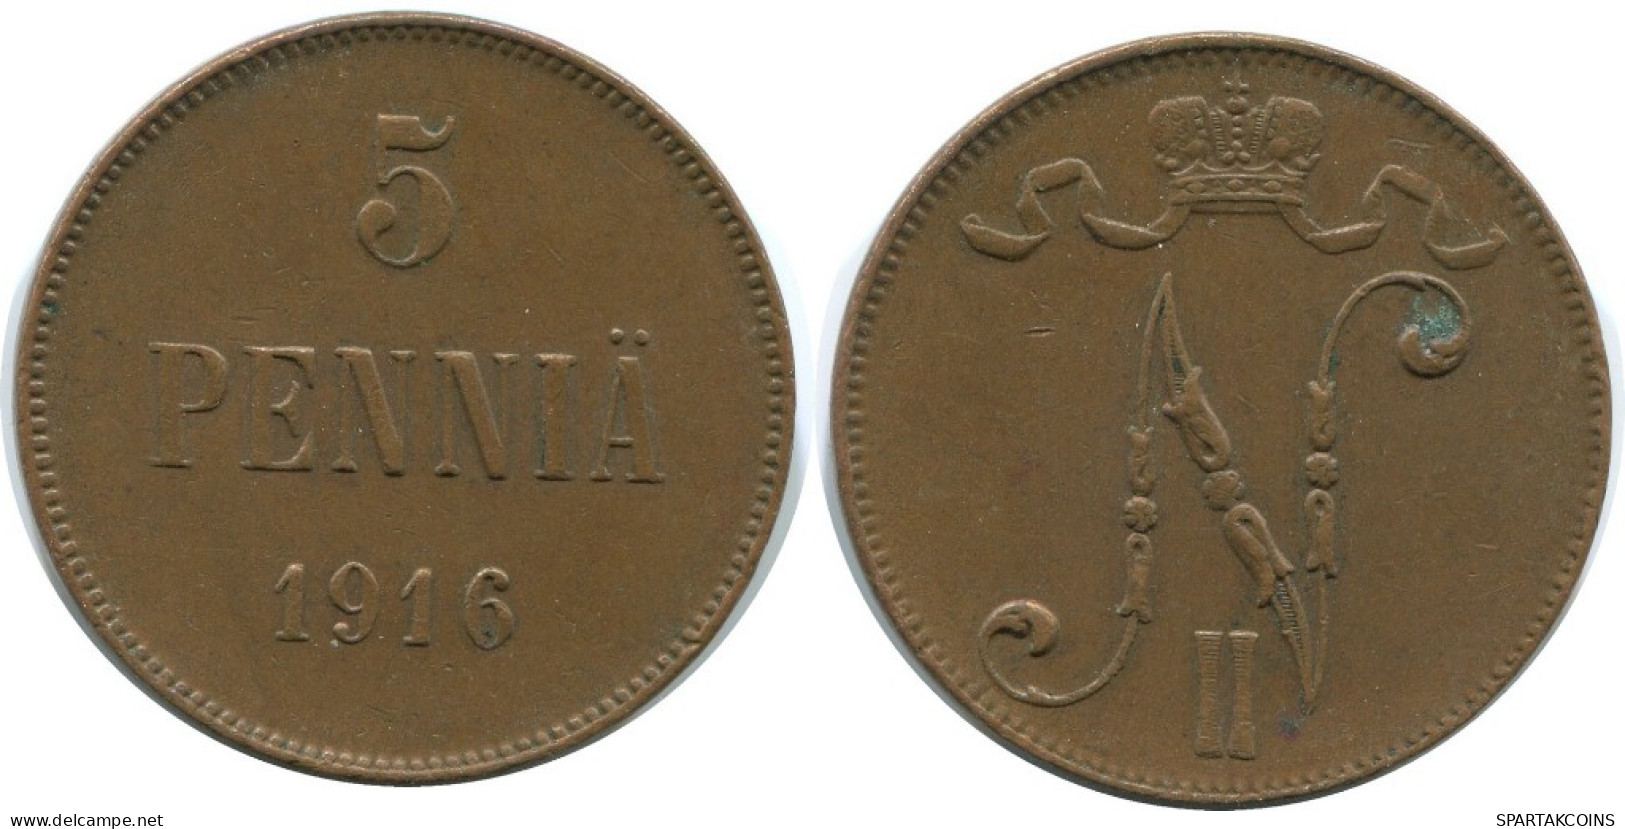 5 PENNIA 1916 FINLAND Coin RUSSIA EMPIRE #AB194.5.U.A - Finlandia